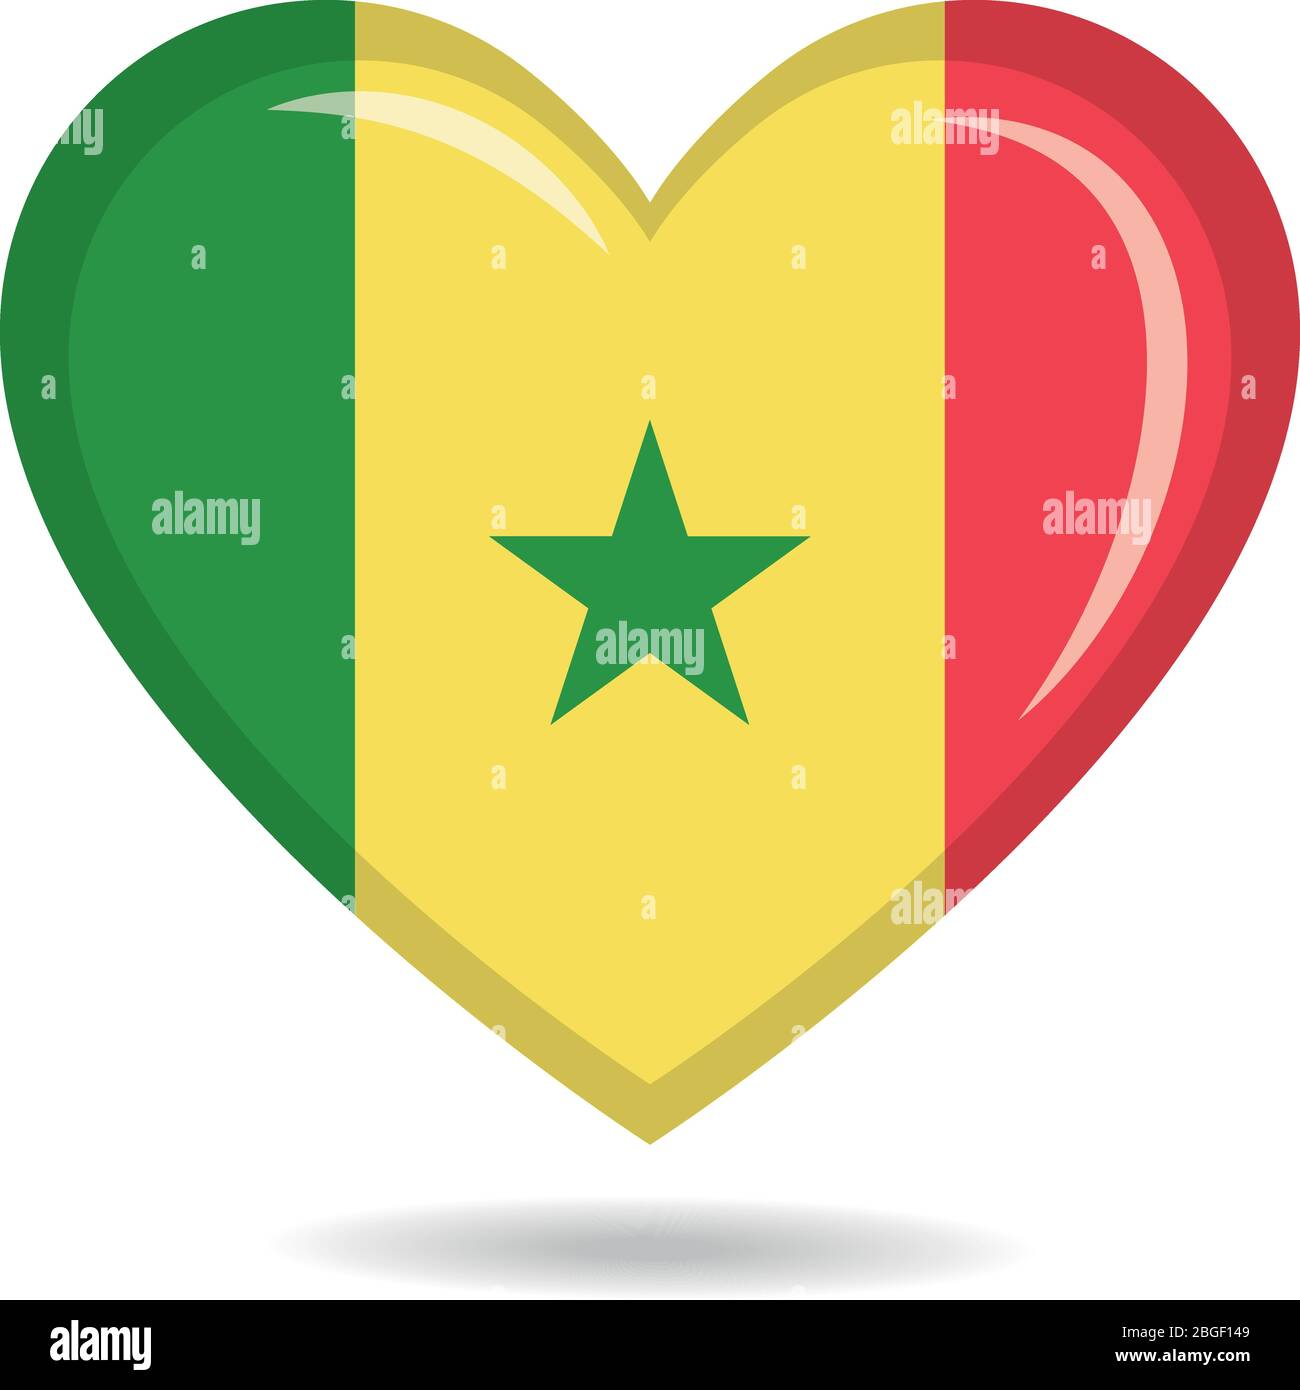 Senegal national flag in heart shape vector illustration Stock Vector